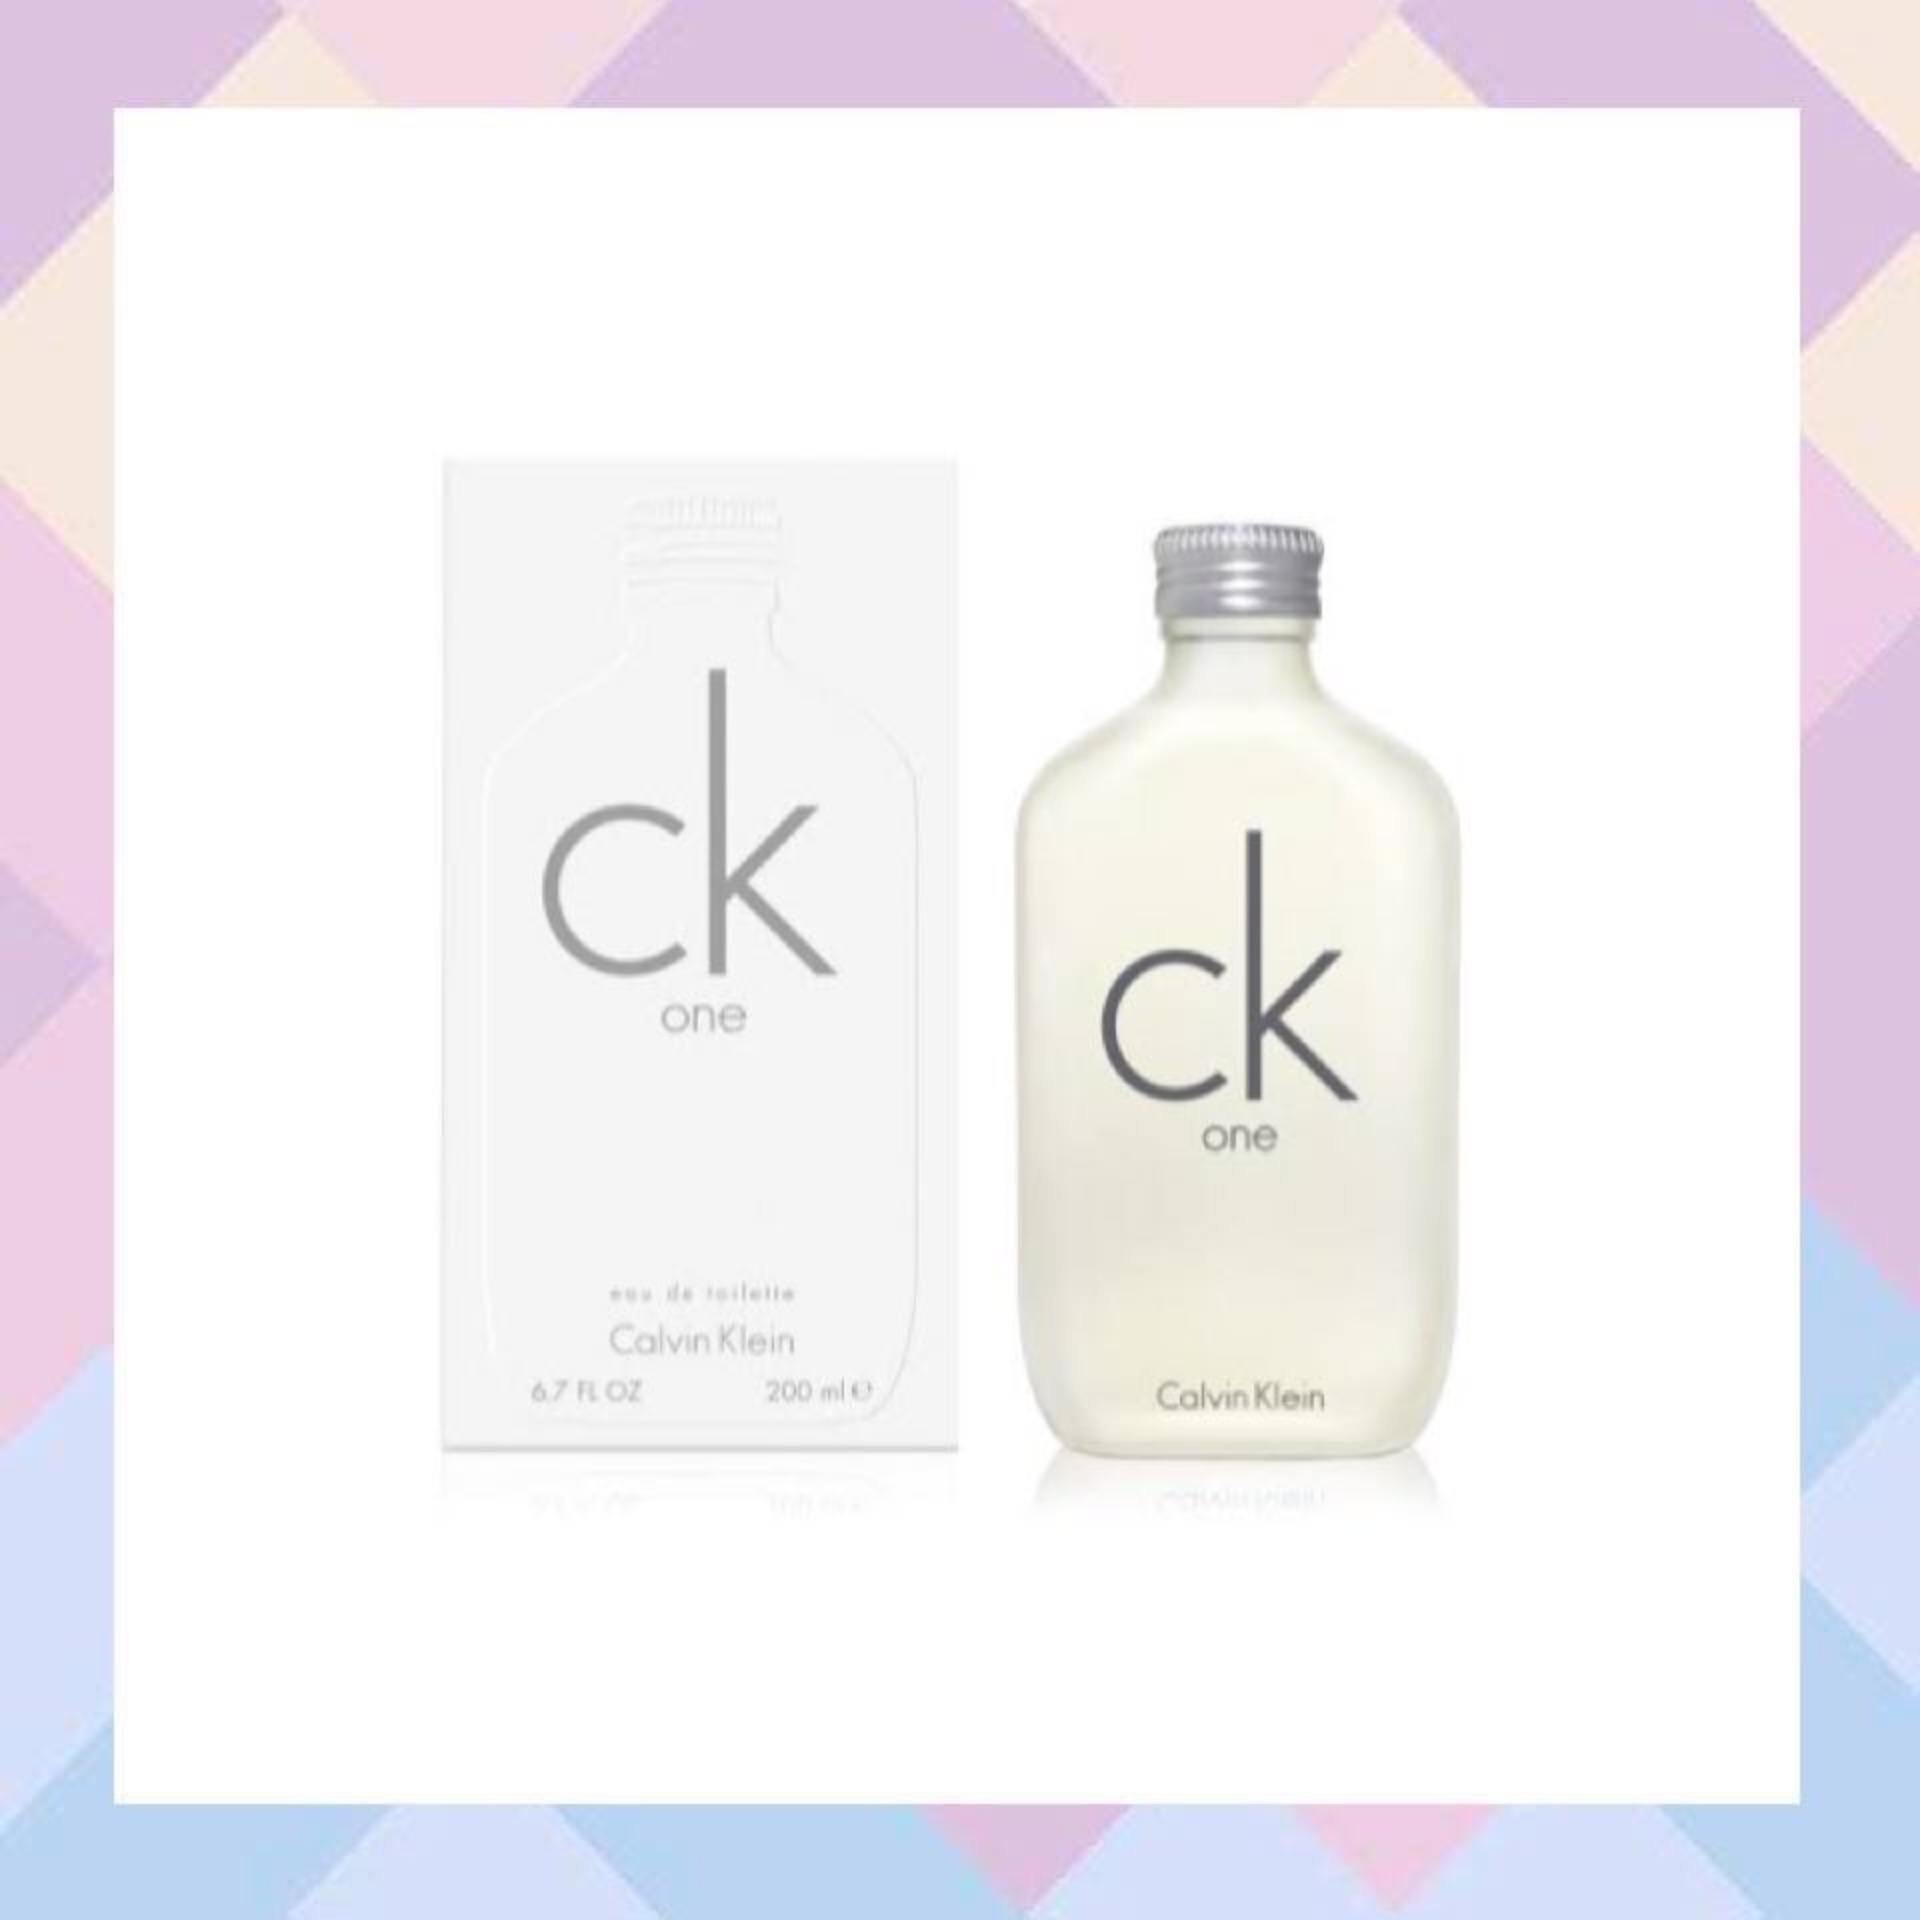 โปรโมชั่น CALVIN KLEIN CK ONE EDT 200ml. | Zara Beauty Review